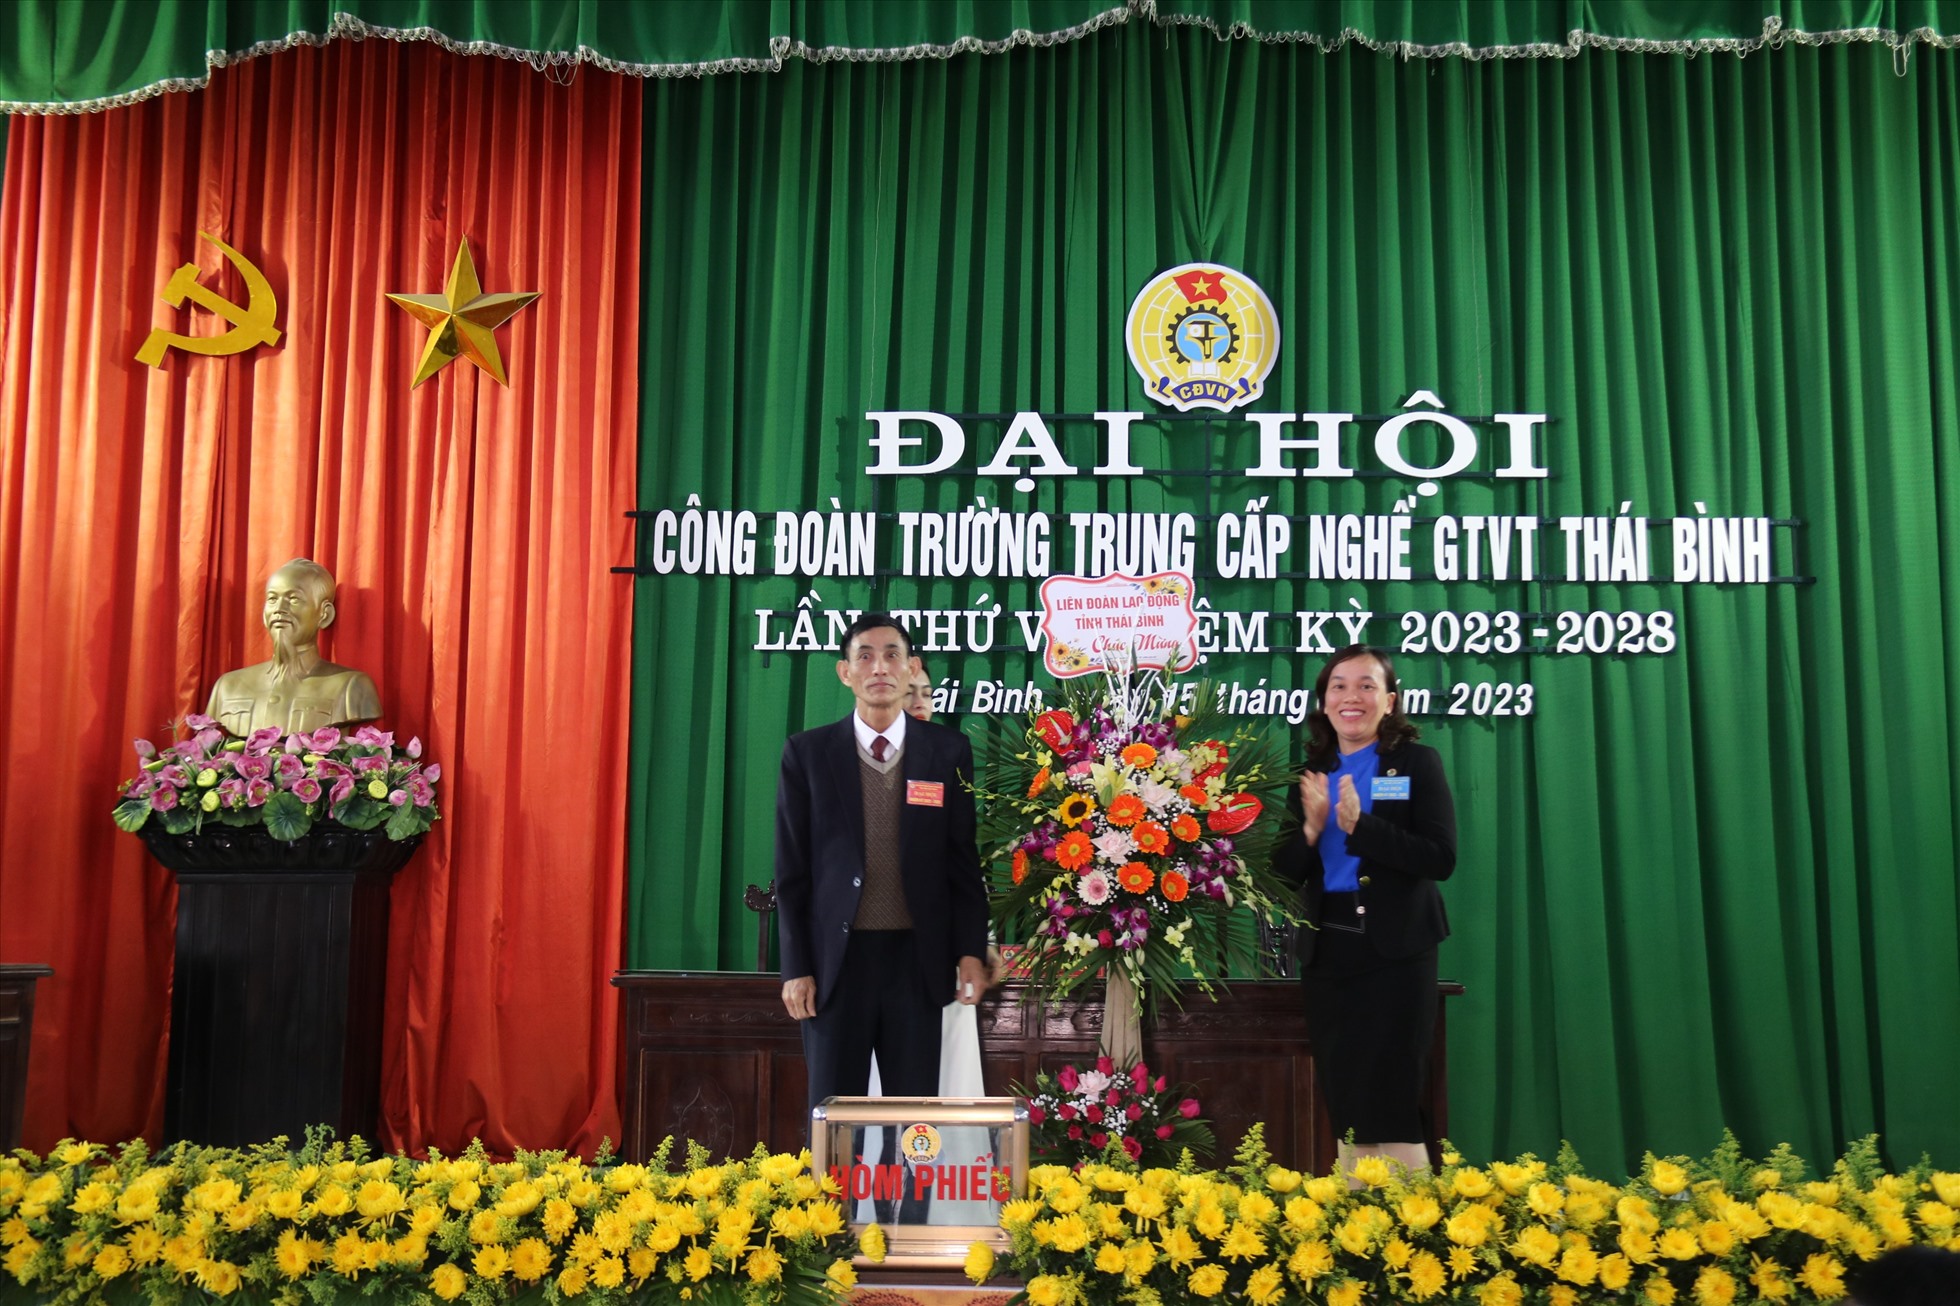 Phó chủ tịch LĐLĐ tỉnh Thái Bình Phạm Thị Thắng tặng hoa chúc mừng Đại hội CĐCS. Ảnh: Bá Mạnh